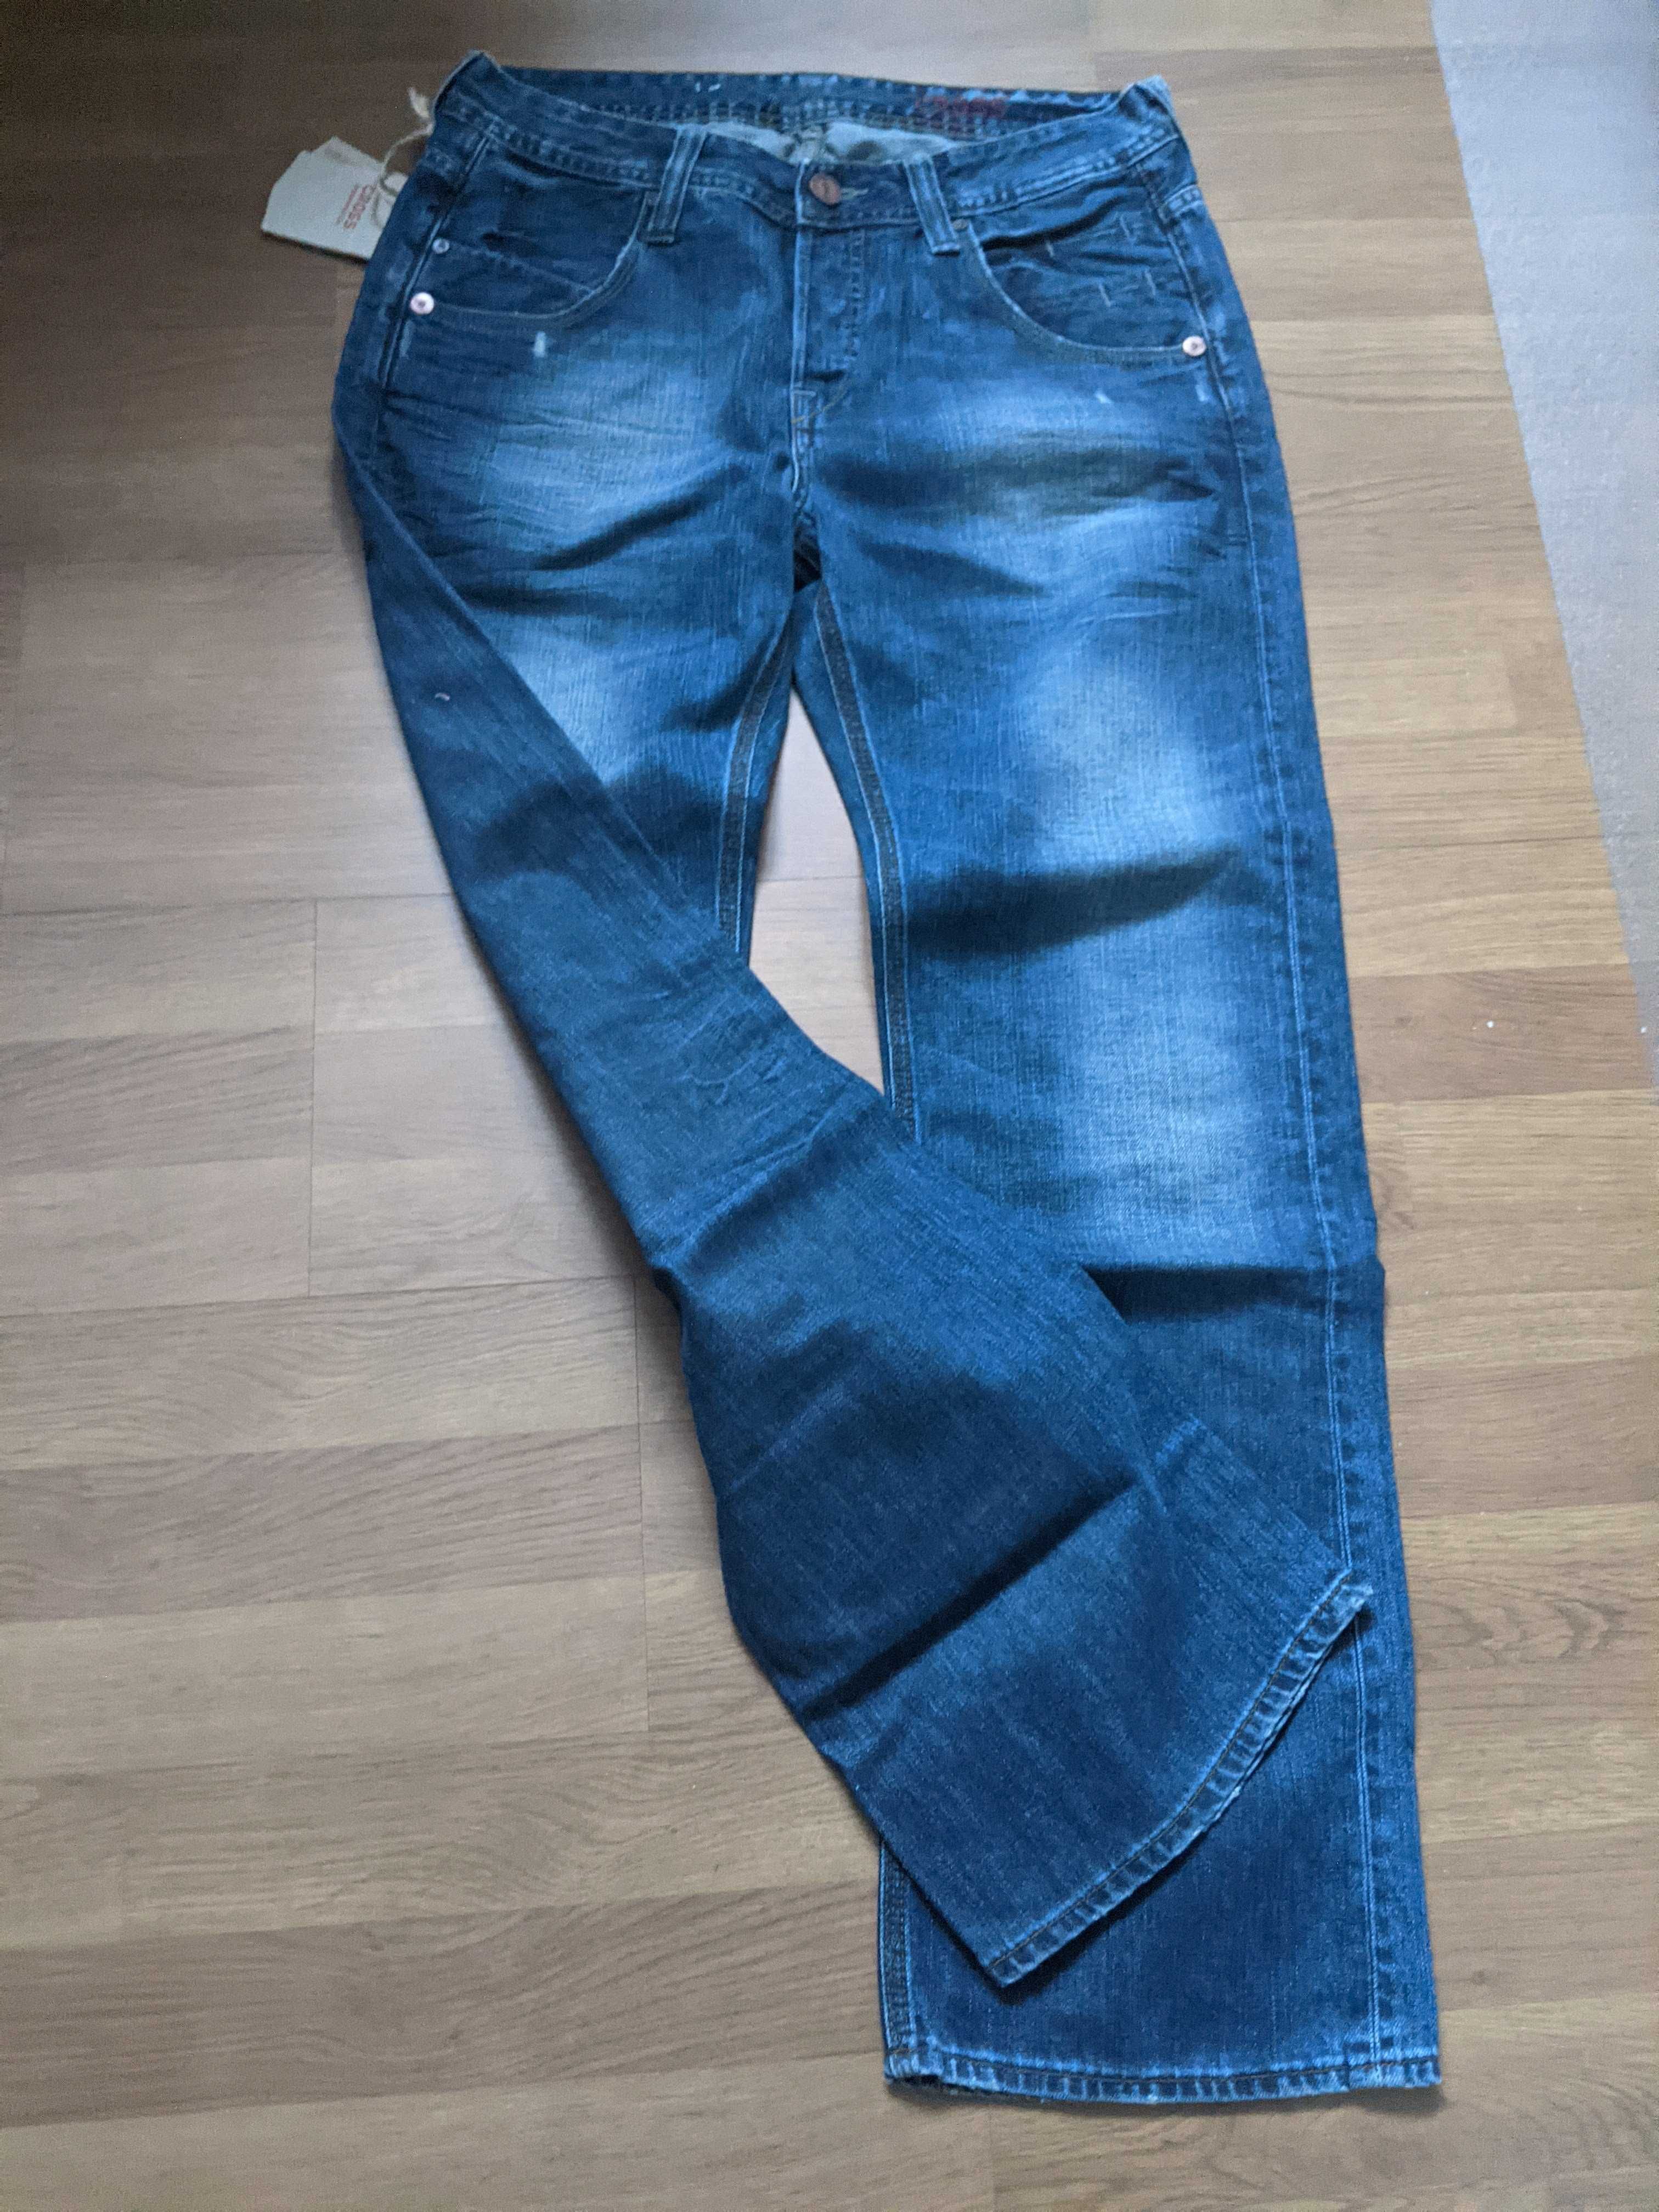 SPODNIE męskie jeans XL GROSS 31/30 pas 84 dziury NOWE